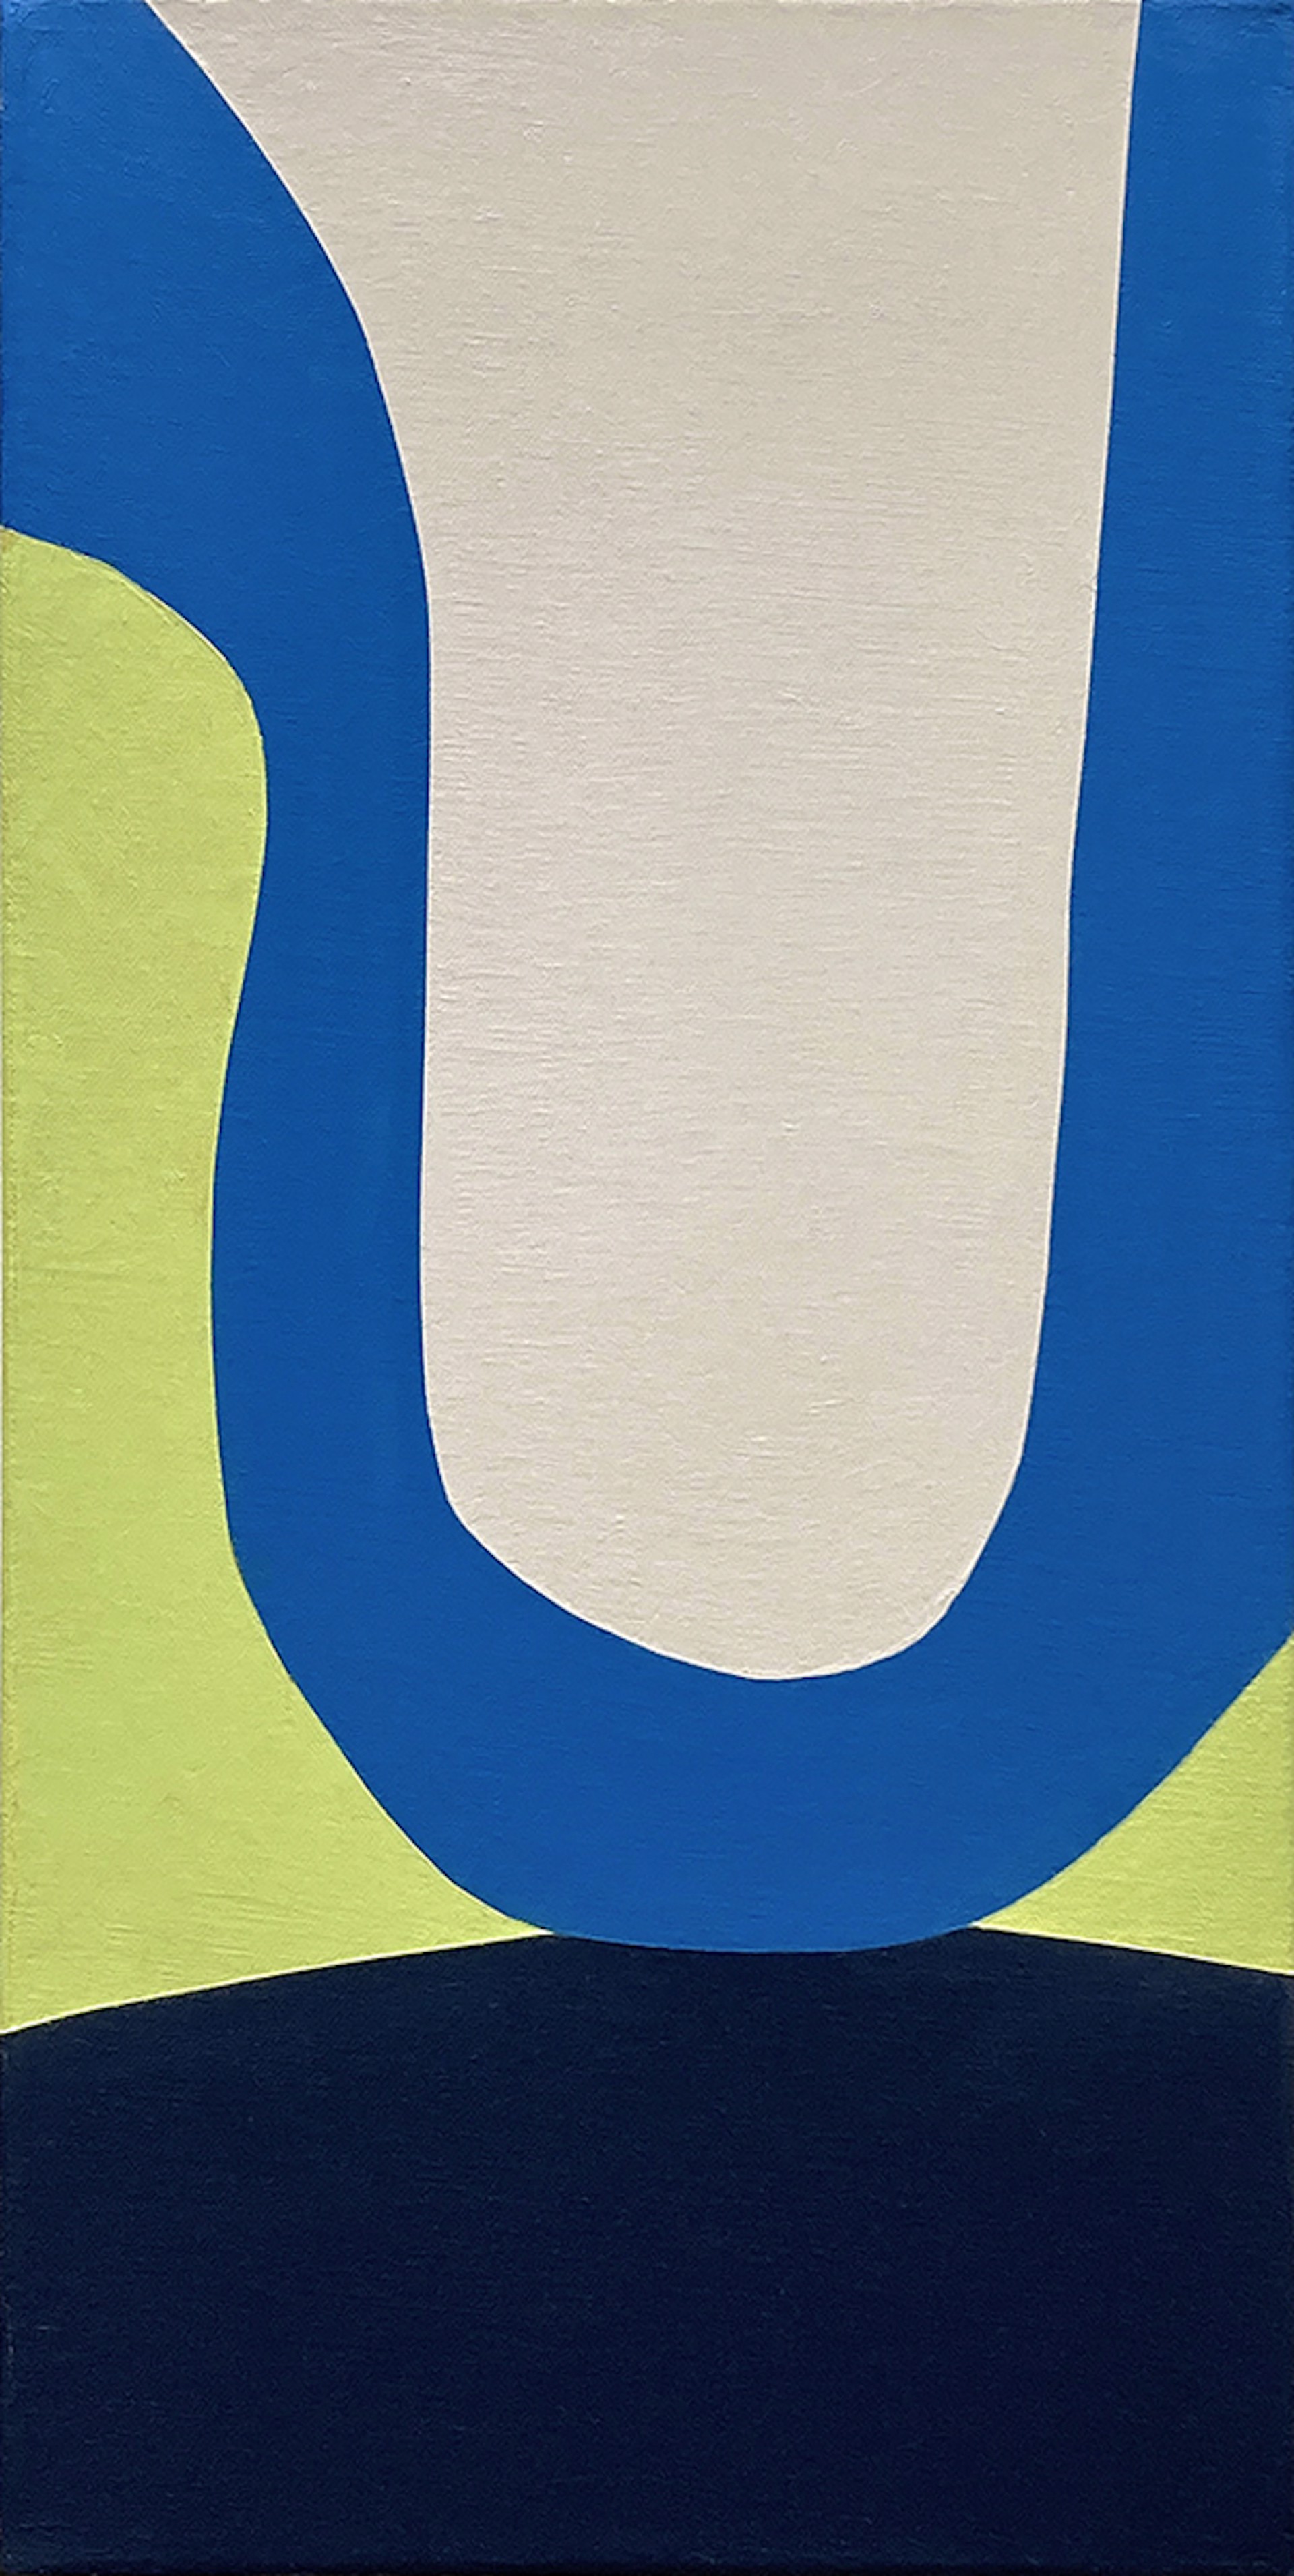 Blue U by Jill Keller Peters